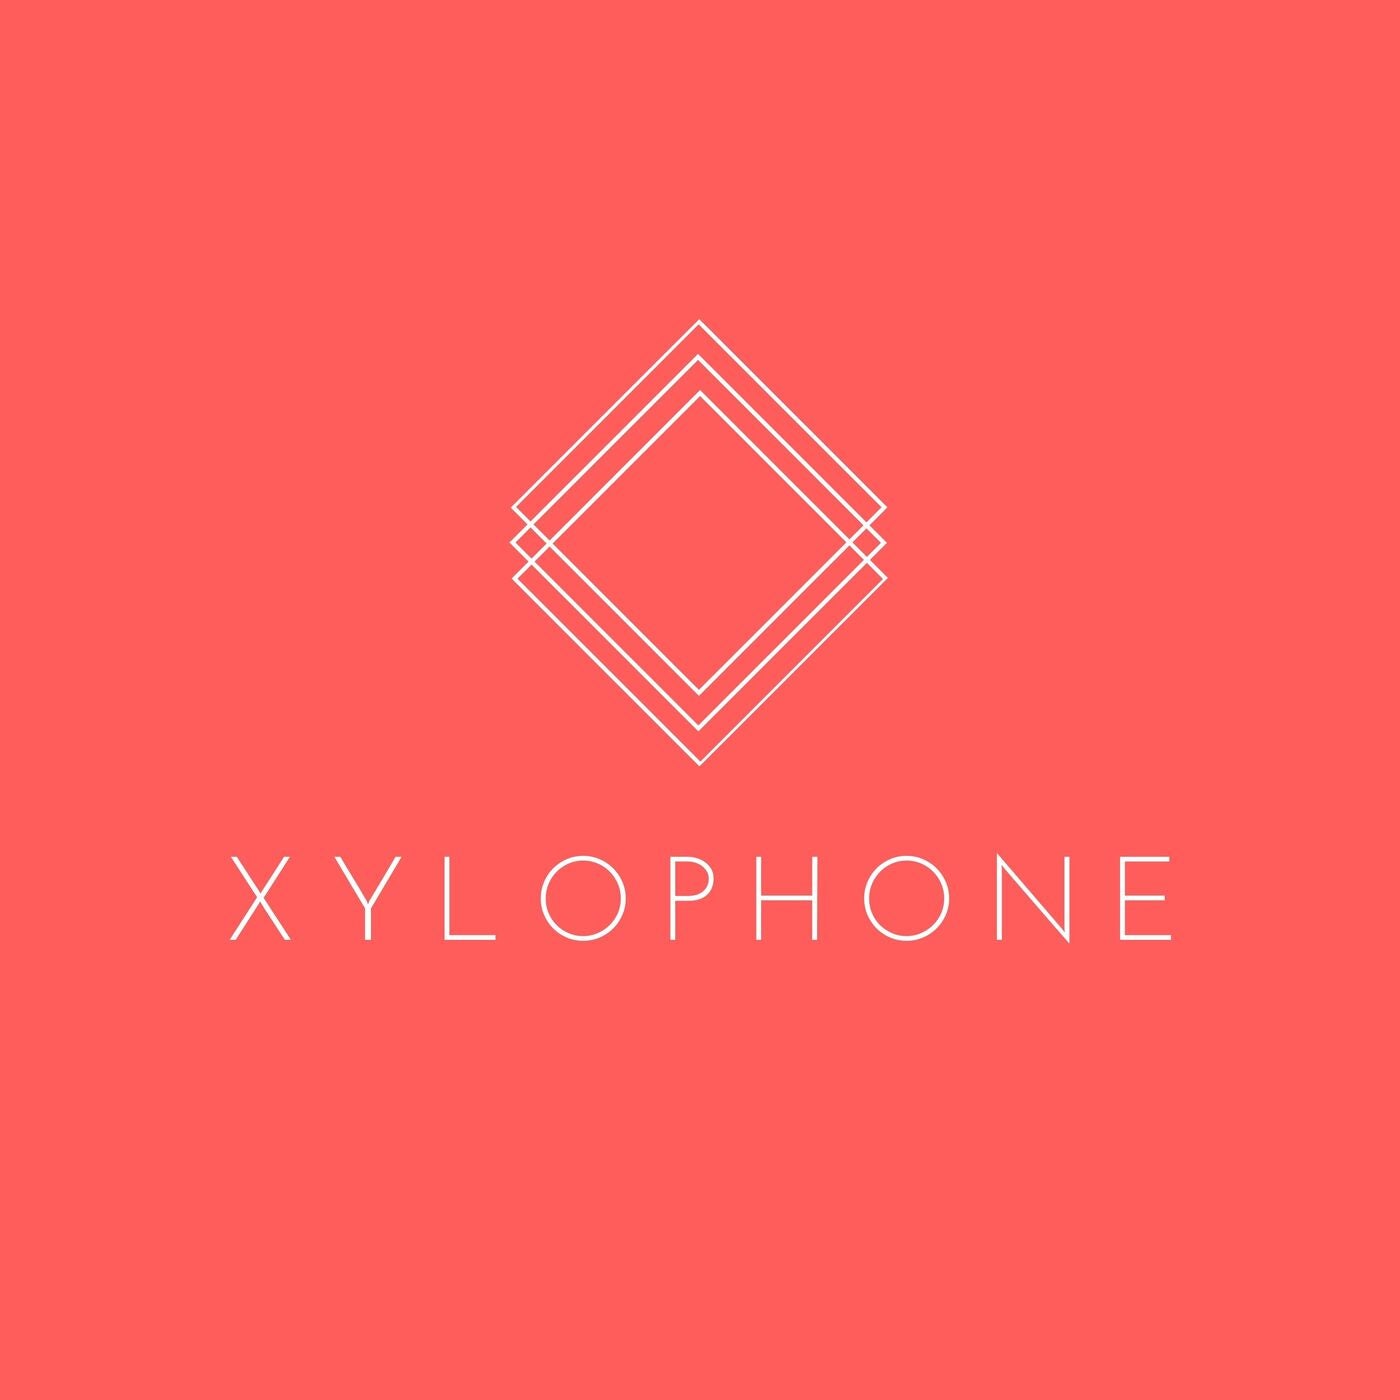 Xylophone